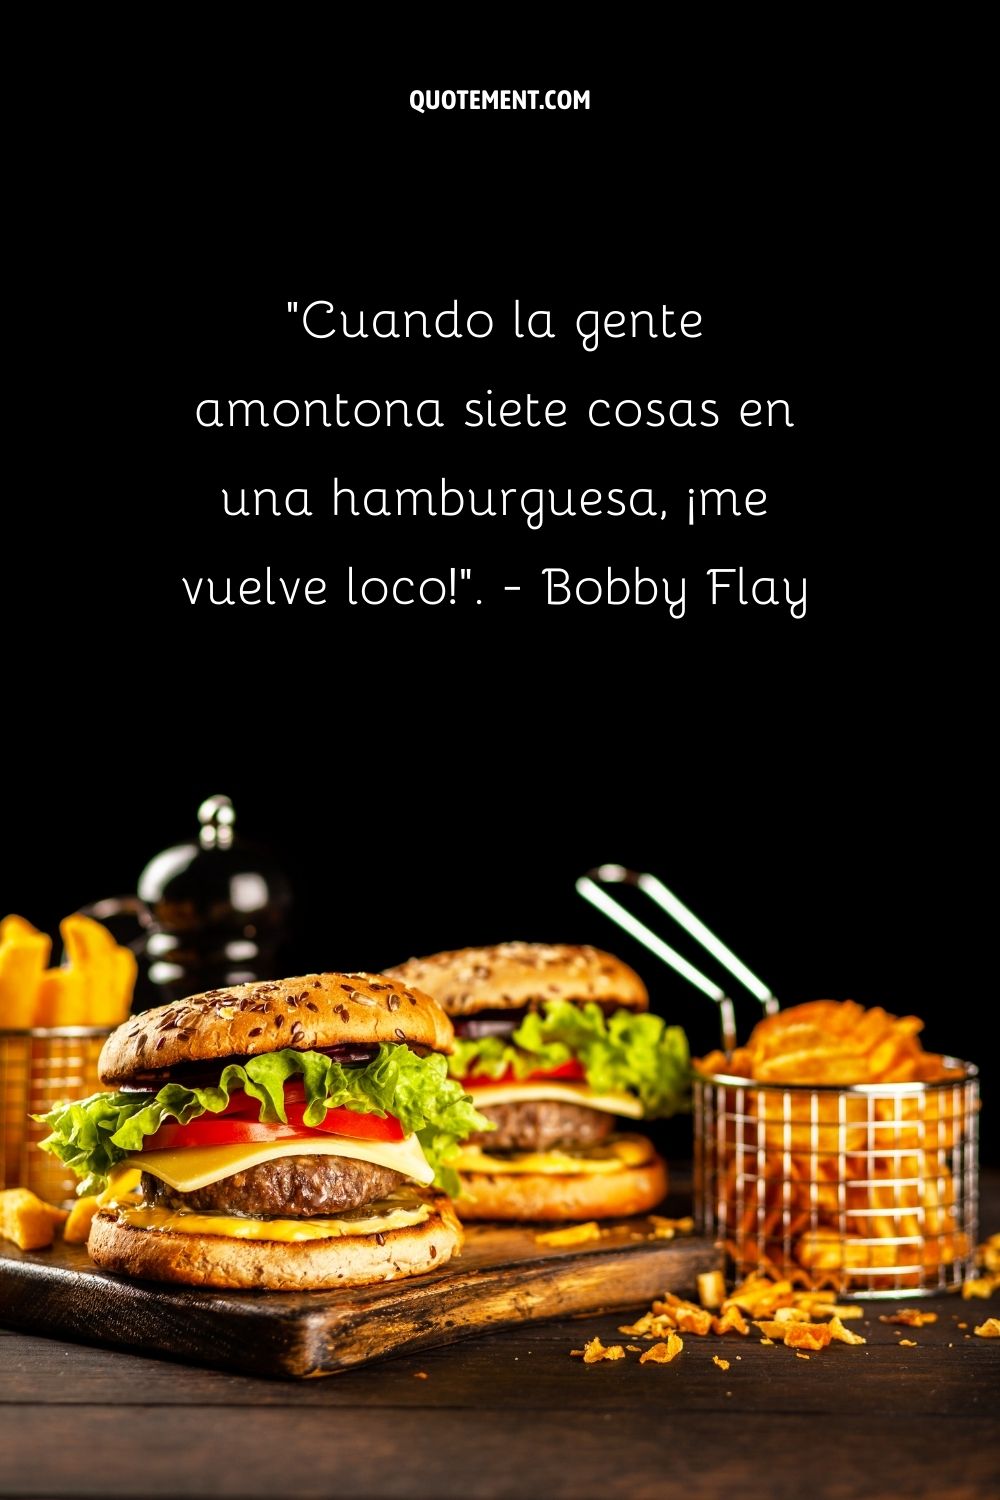 "Cuando la gente pone siete cosas en una hamburguesa, ¡me vuelve loco!" - Bobby Flay